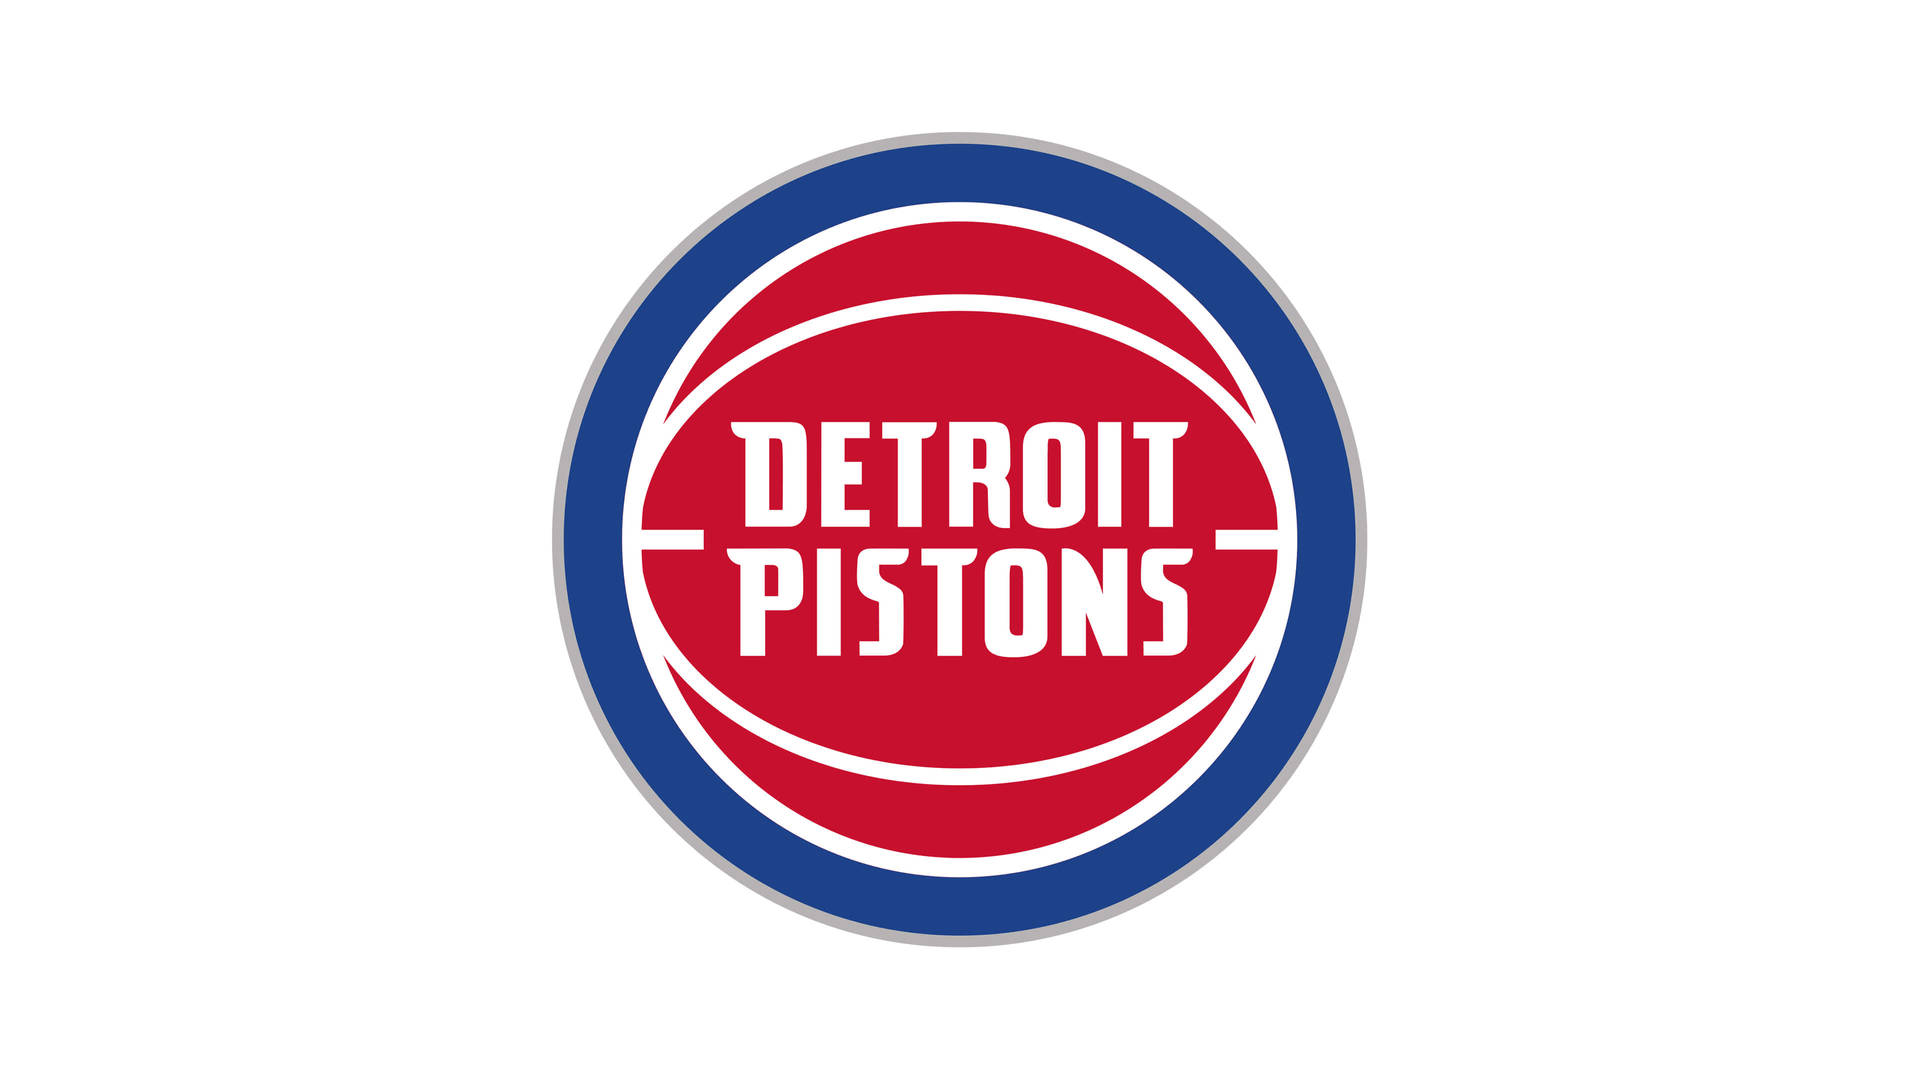 Detroit Pistons Modern Team Logo Background